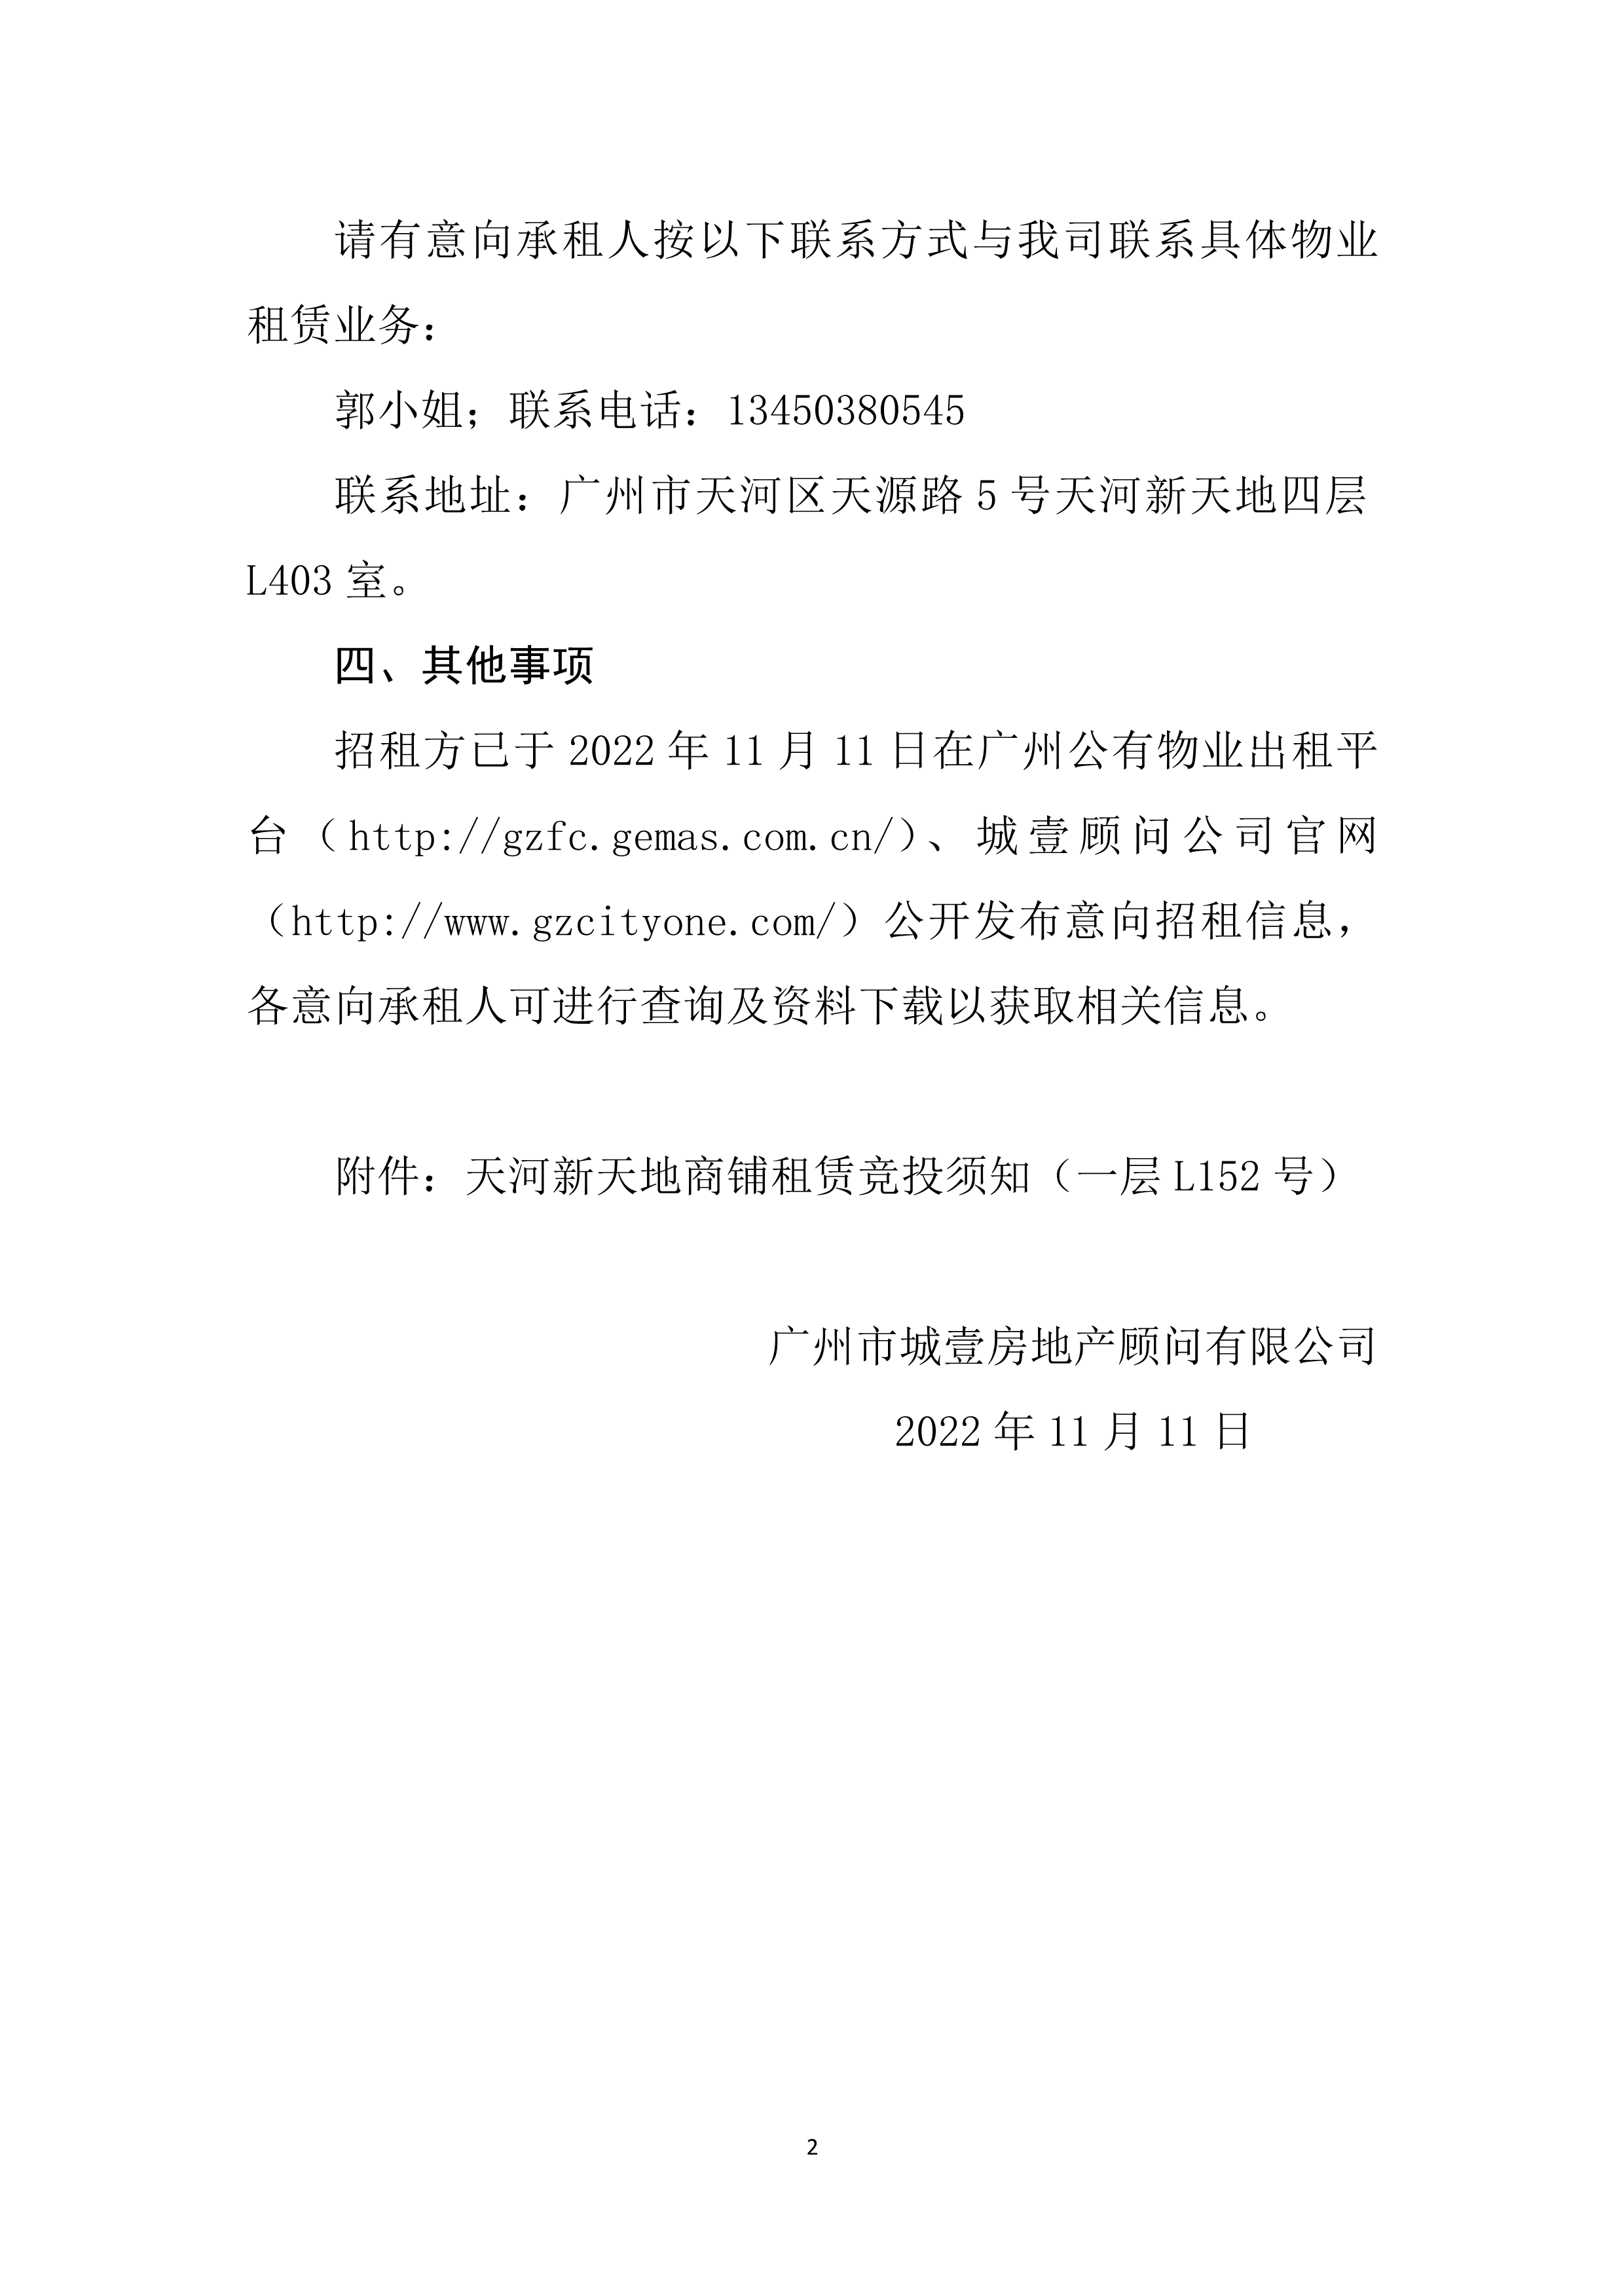 （一层L152号）天河新天地商铺租赁竞投须知_2.png